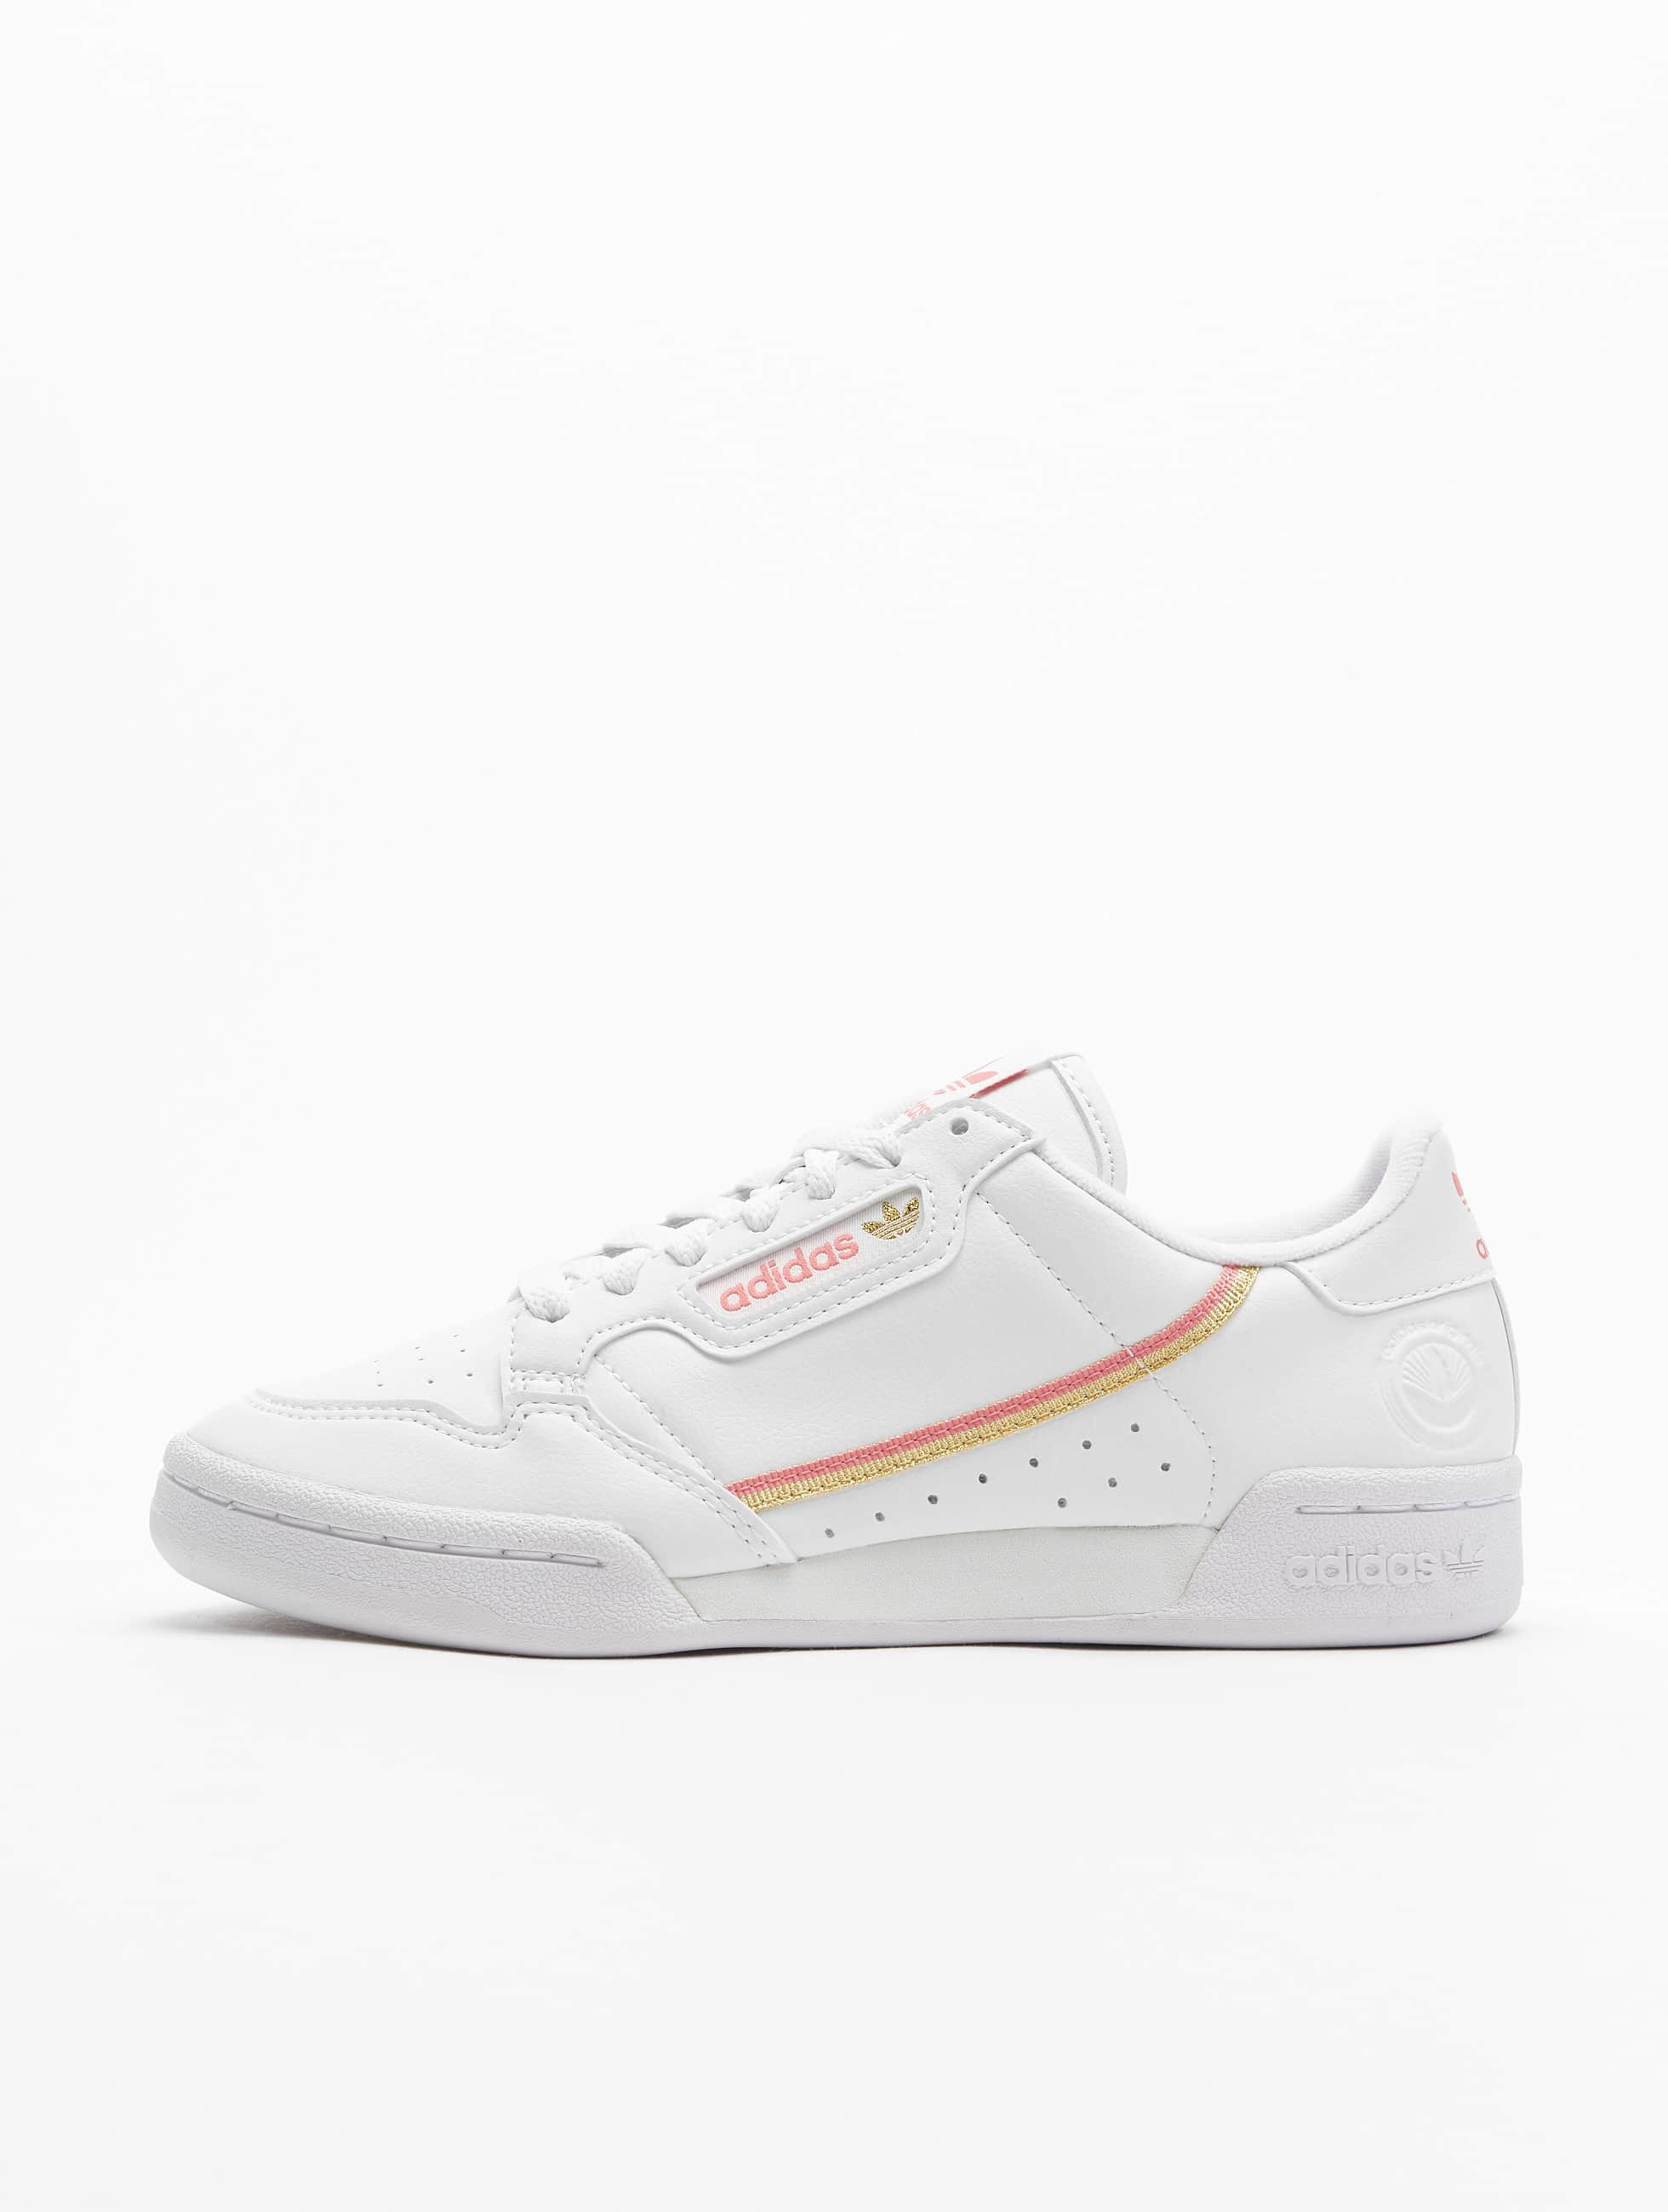 adidas Originals Shoe / Continental Vegan in white 836516